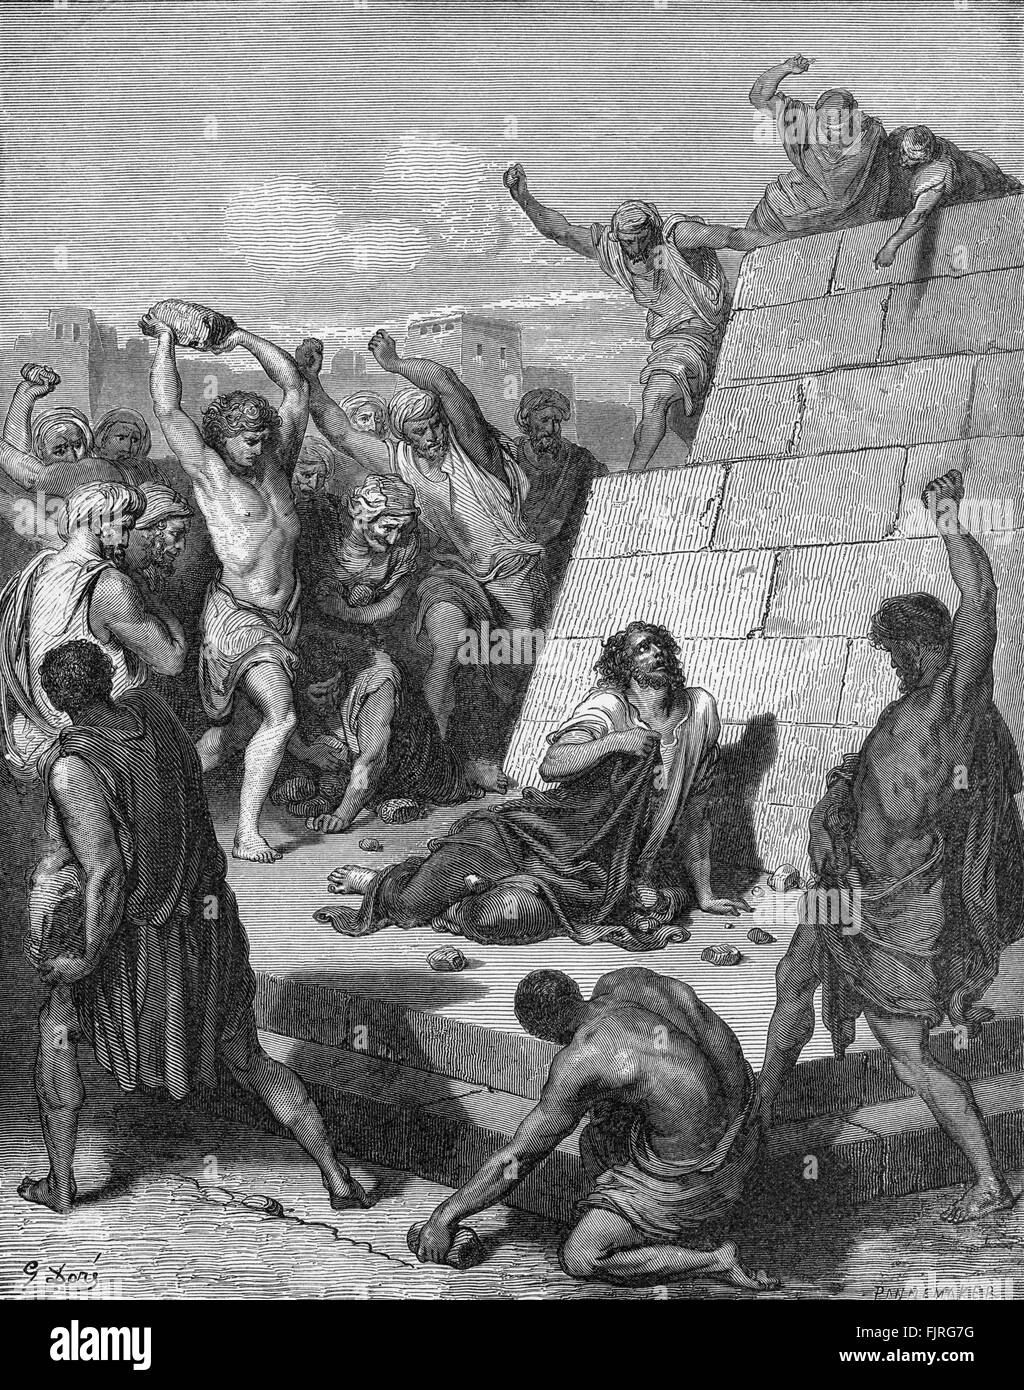 Le Martyre de saint Etienne (Actes des apôtres chapitres VI et VII), illustration par Gustave Doré (1832 - 1883) Banque D'Images